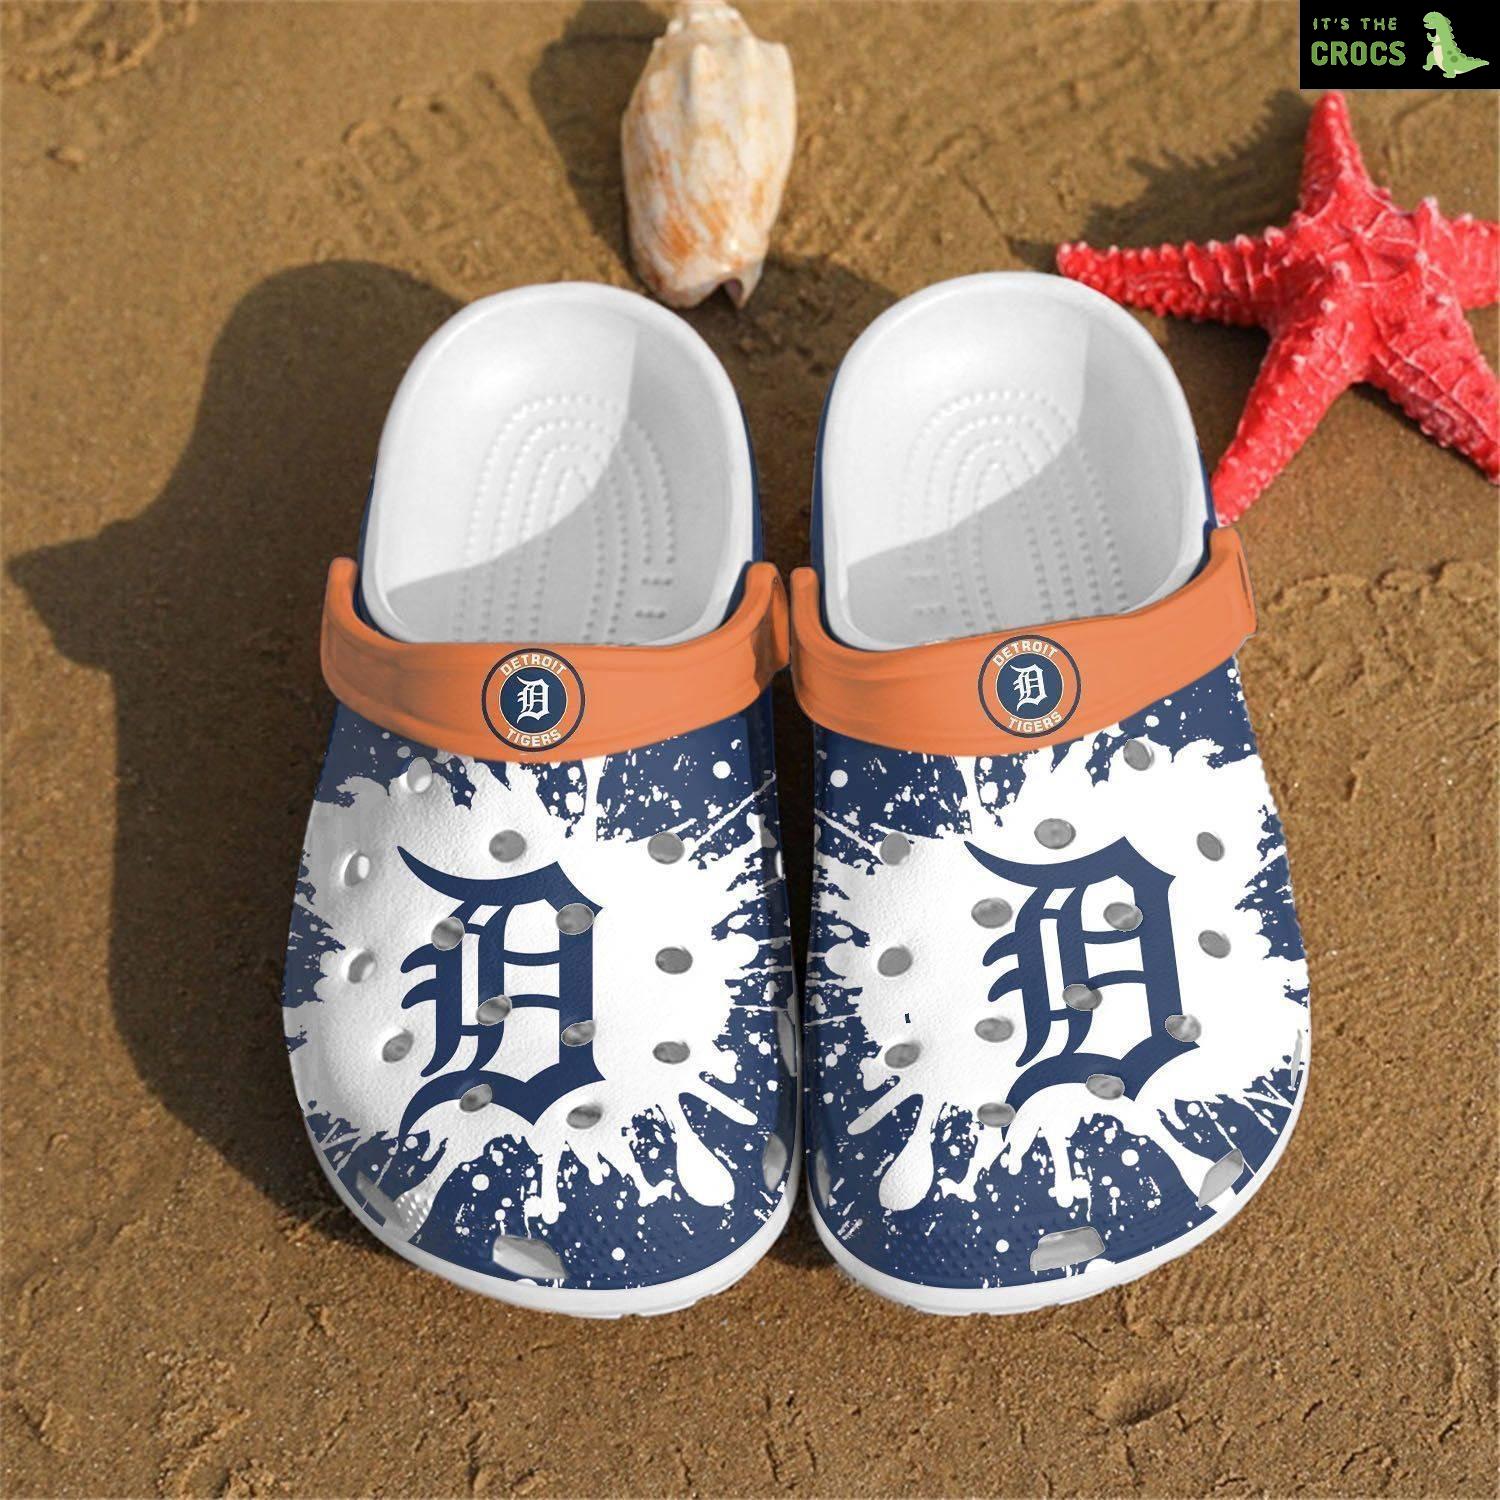 Detroit Tigers Mlb Teams Gift For Fan Crocs Clog Shoescrocband Clogs Comfy Foot